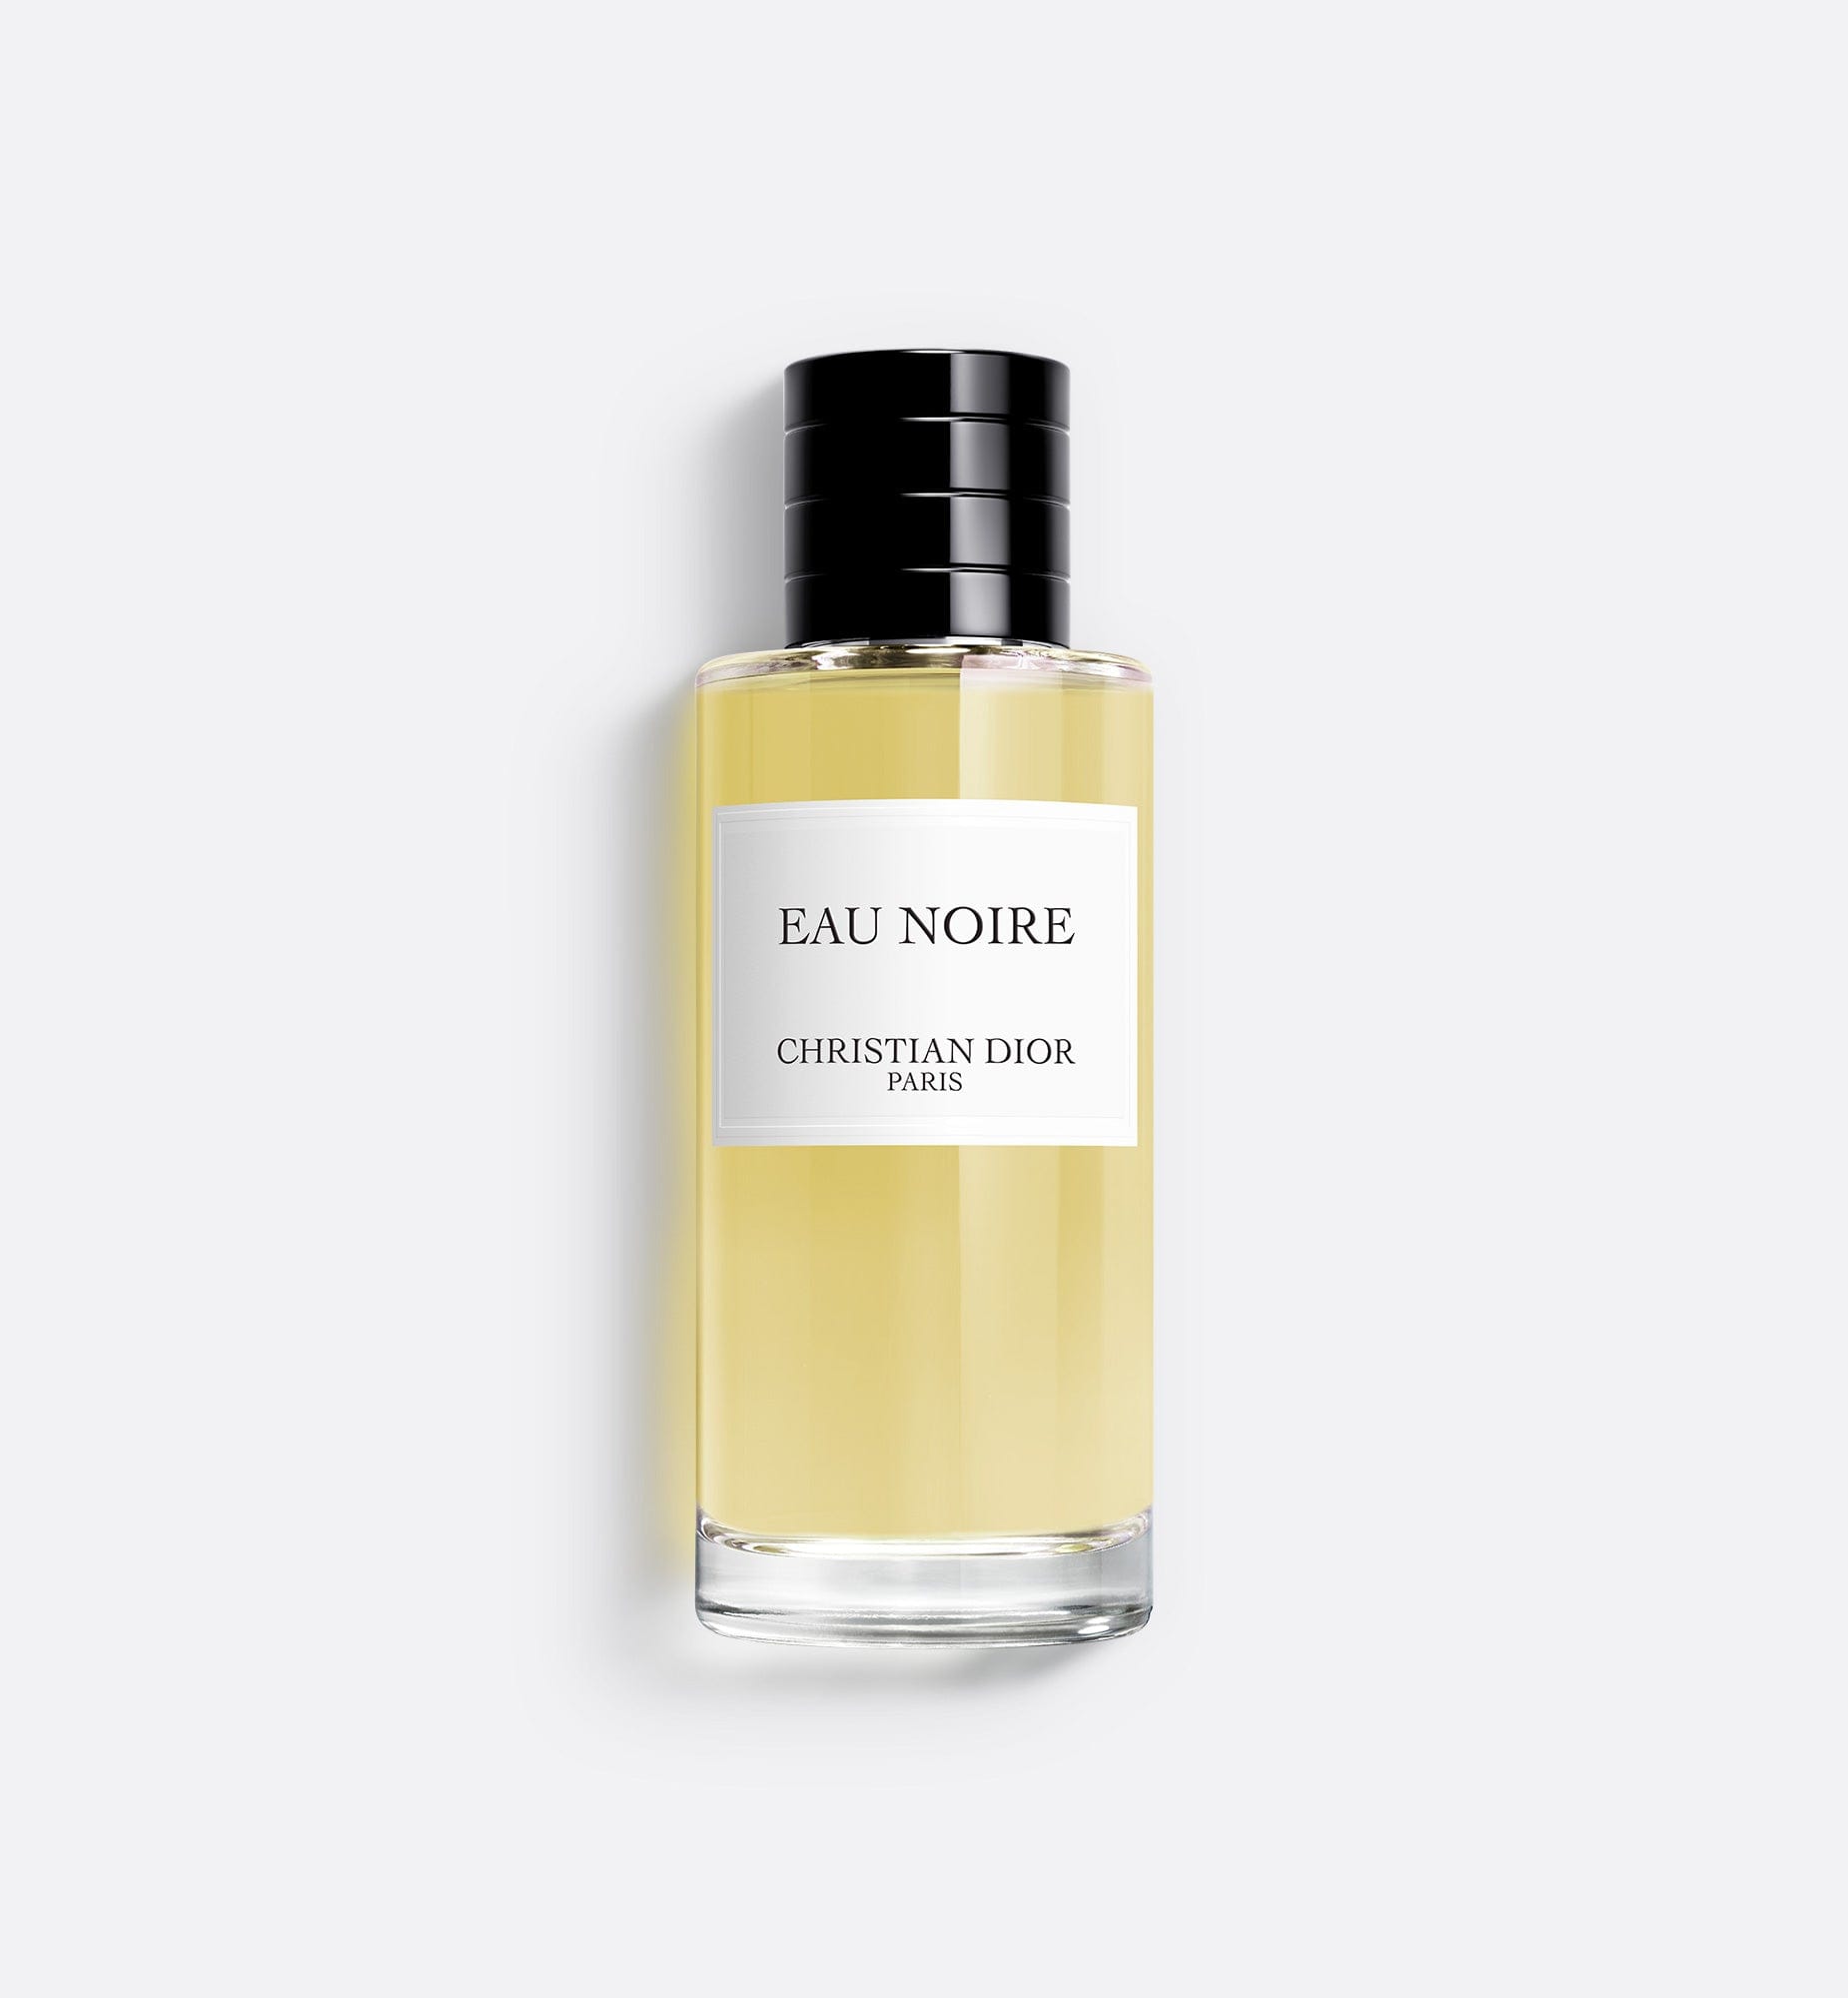 Eau Noire | Unisex Eau de Parfum - Aromatic and Gourmand Notes